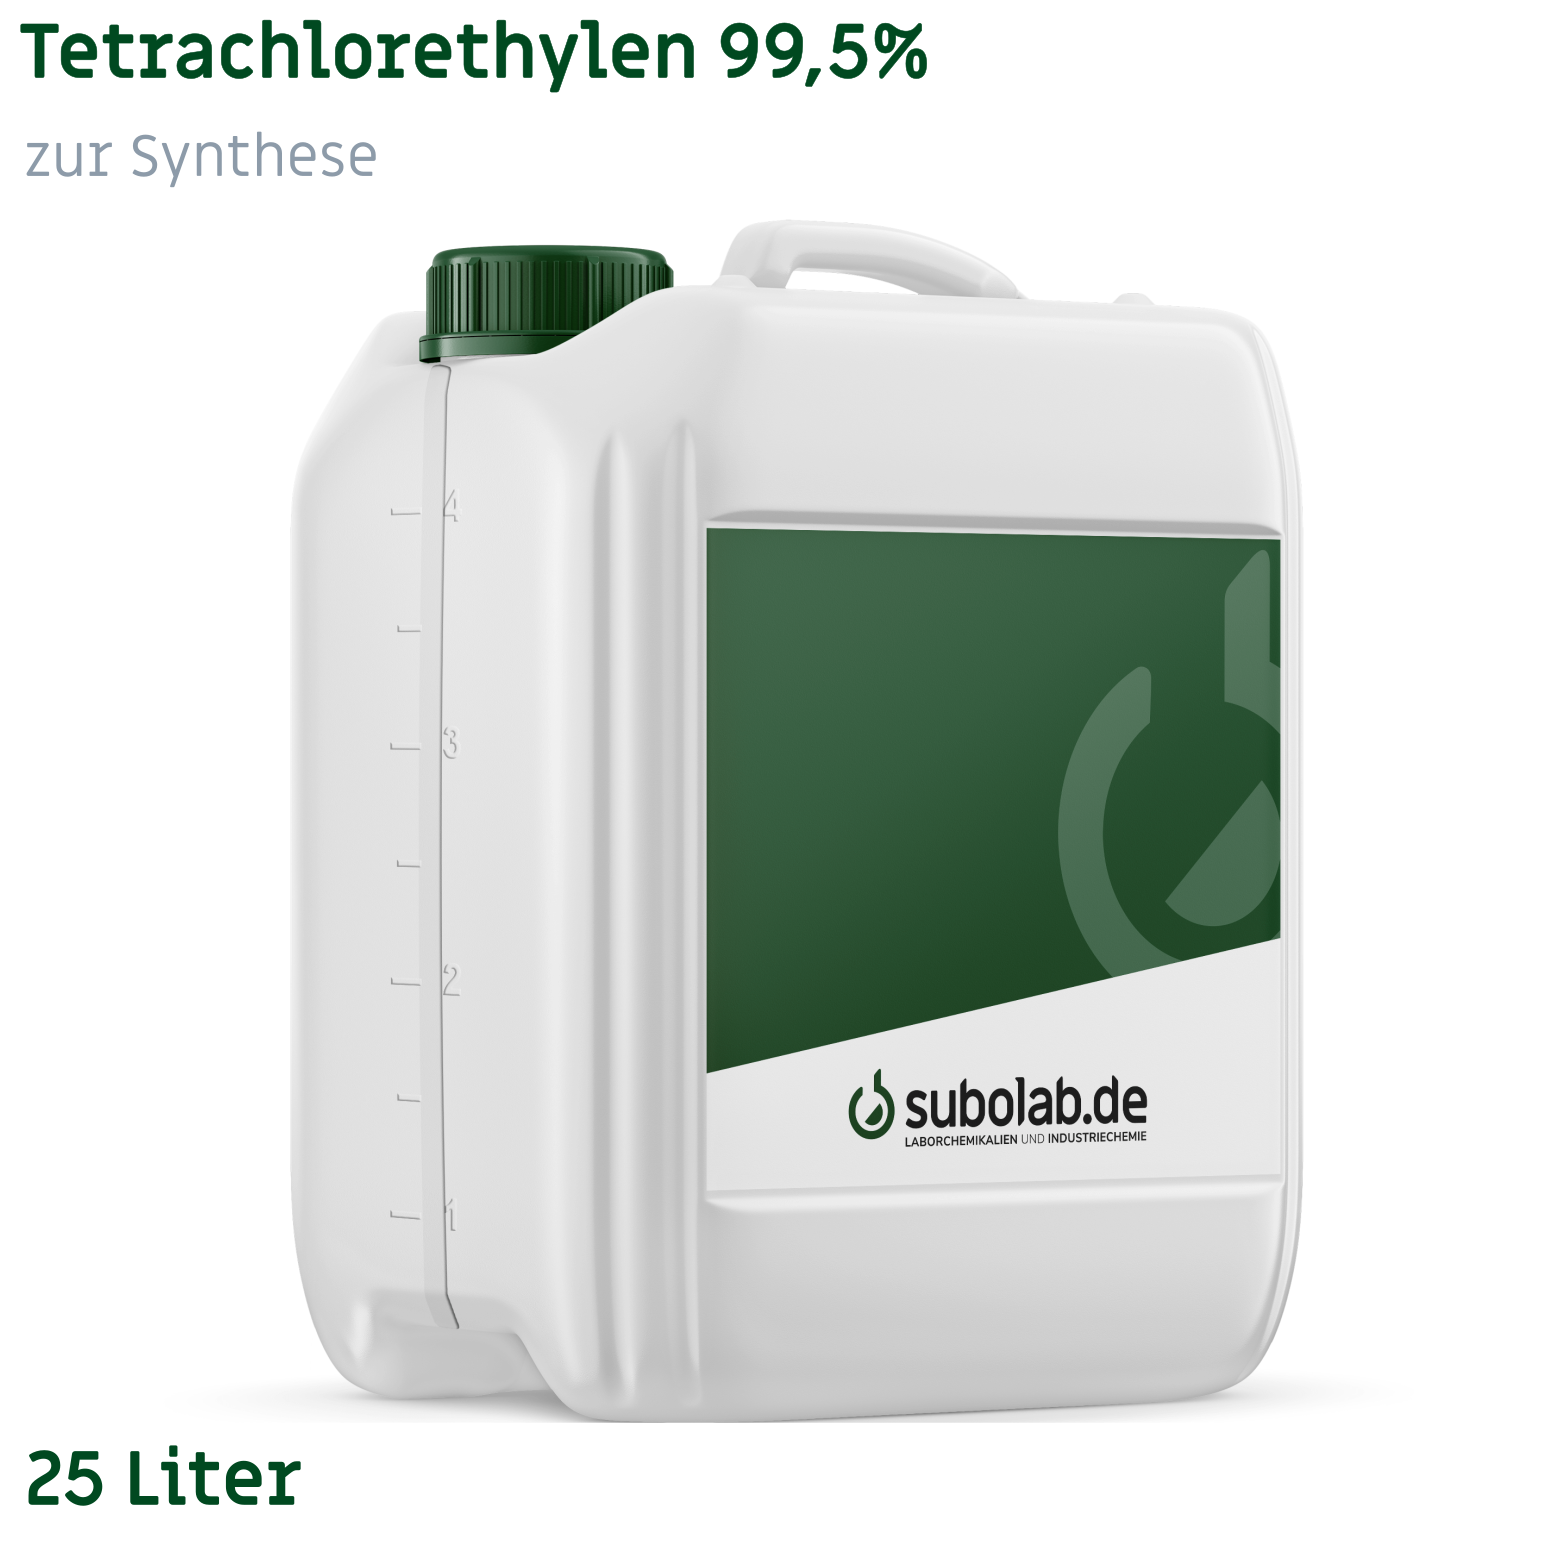 Bild von Tetrachlorethylen 99,5% zur Synthese (25 Liter)